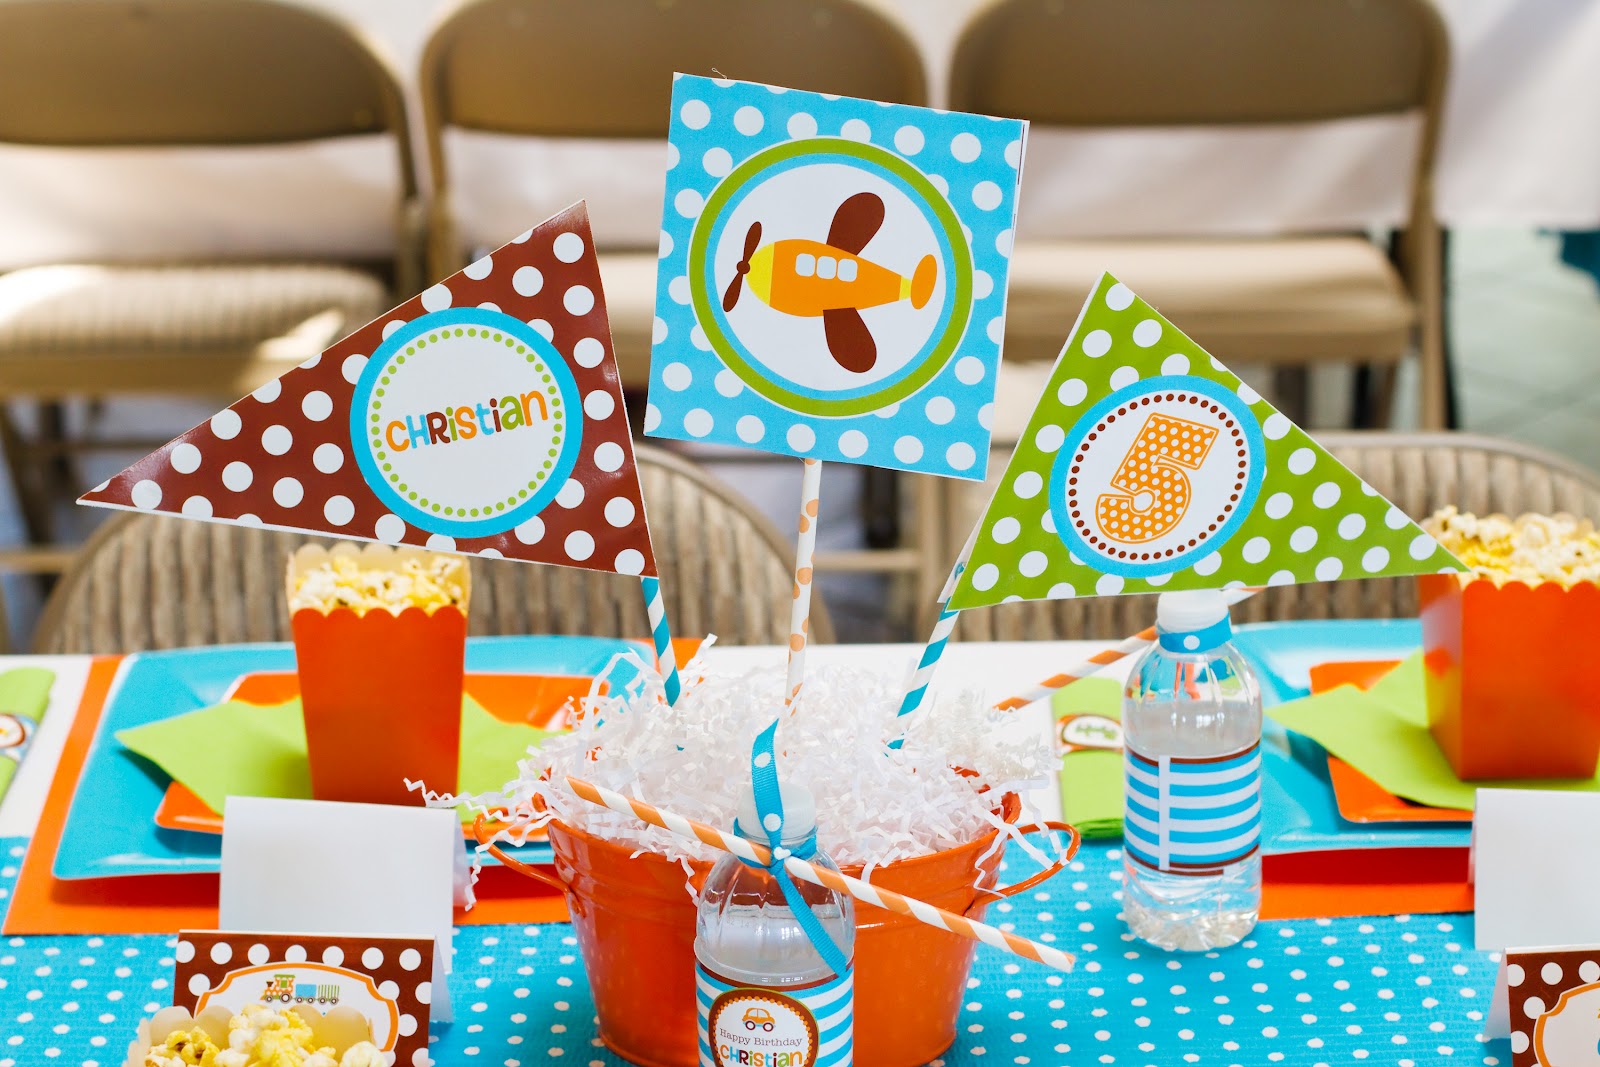 Вкусный Happy Birthday: как интересно накрыть стол к детскому дню рождения + 2 варианта праздничного меню! рис 4